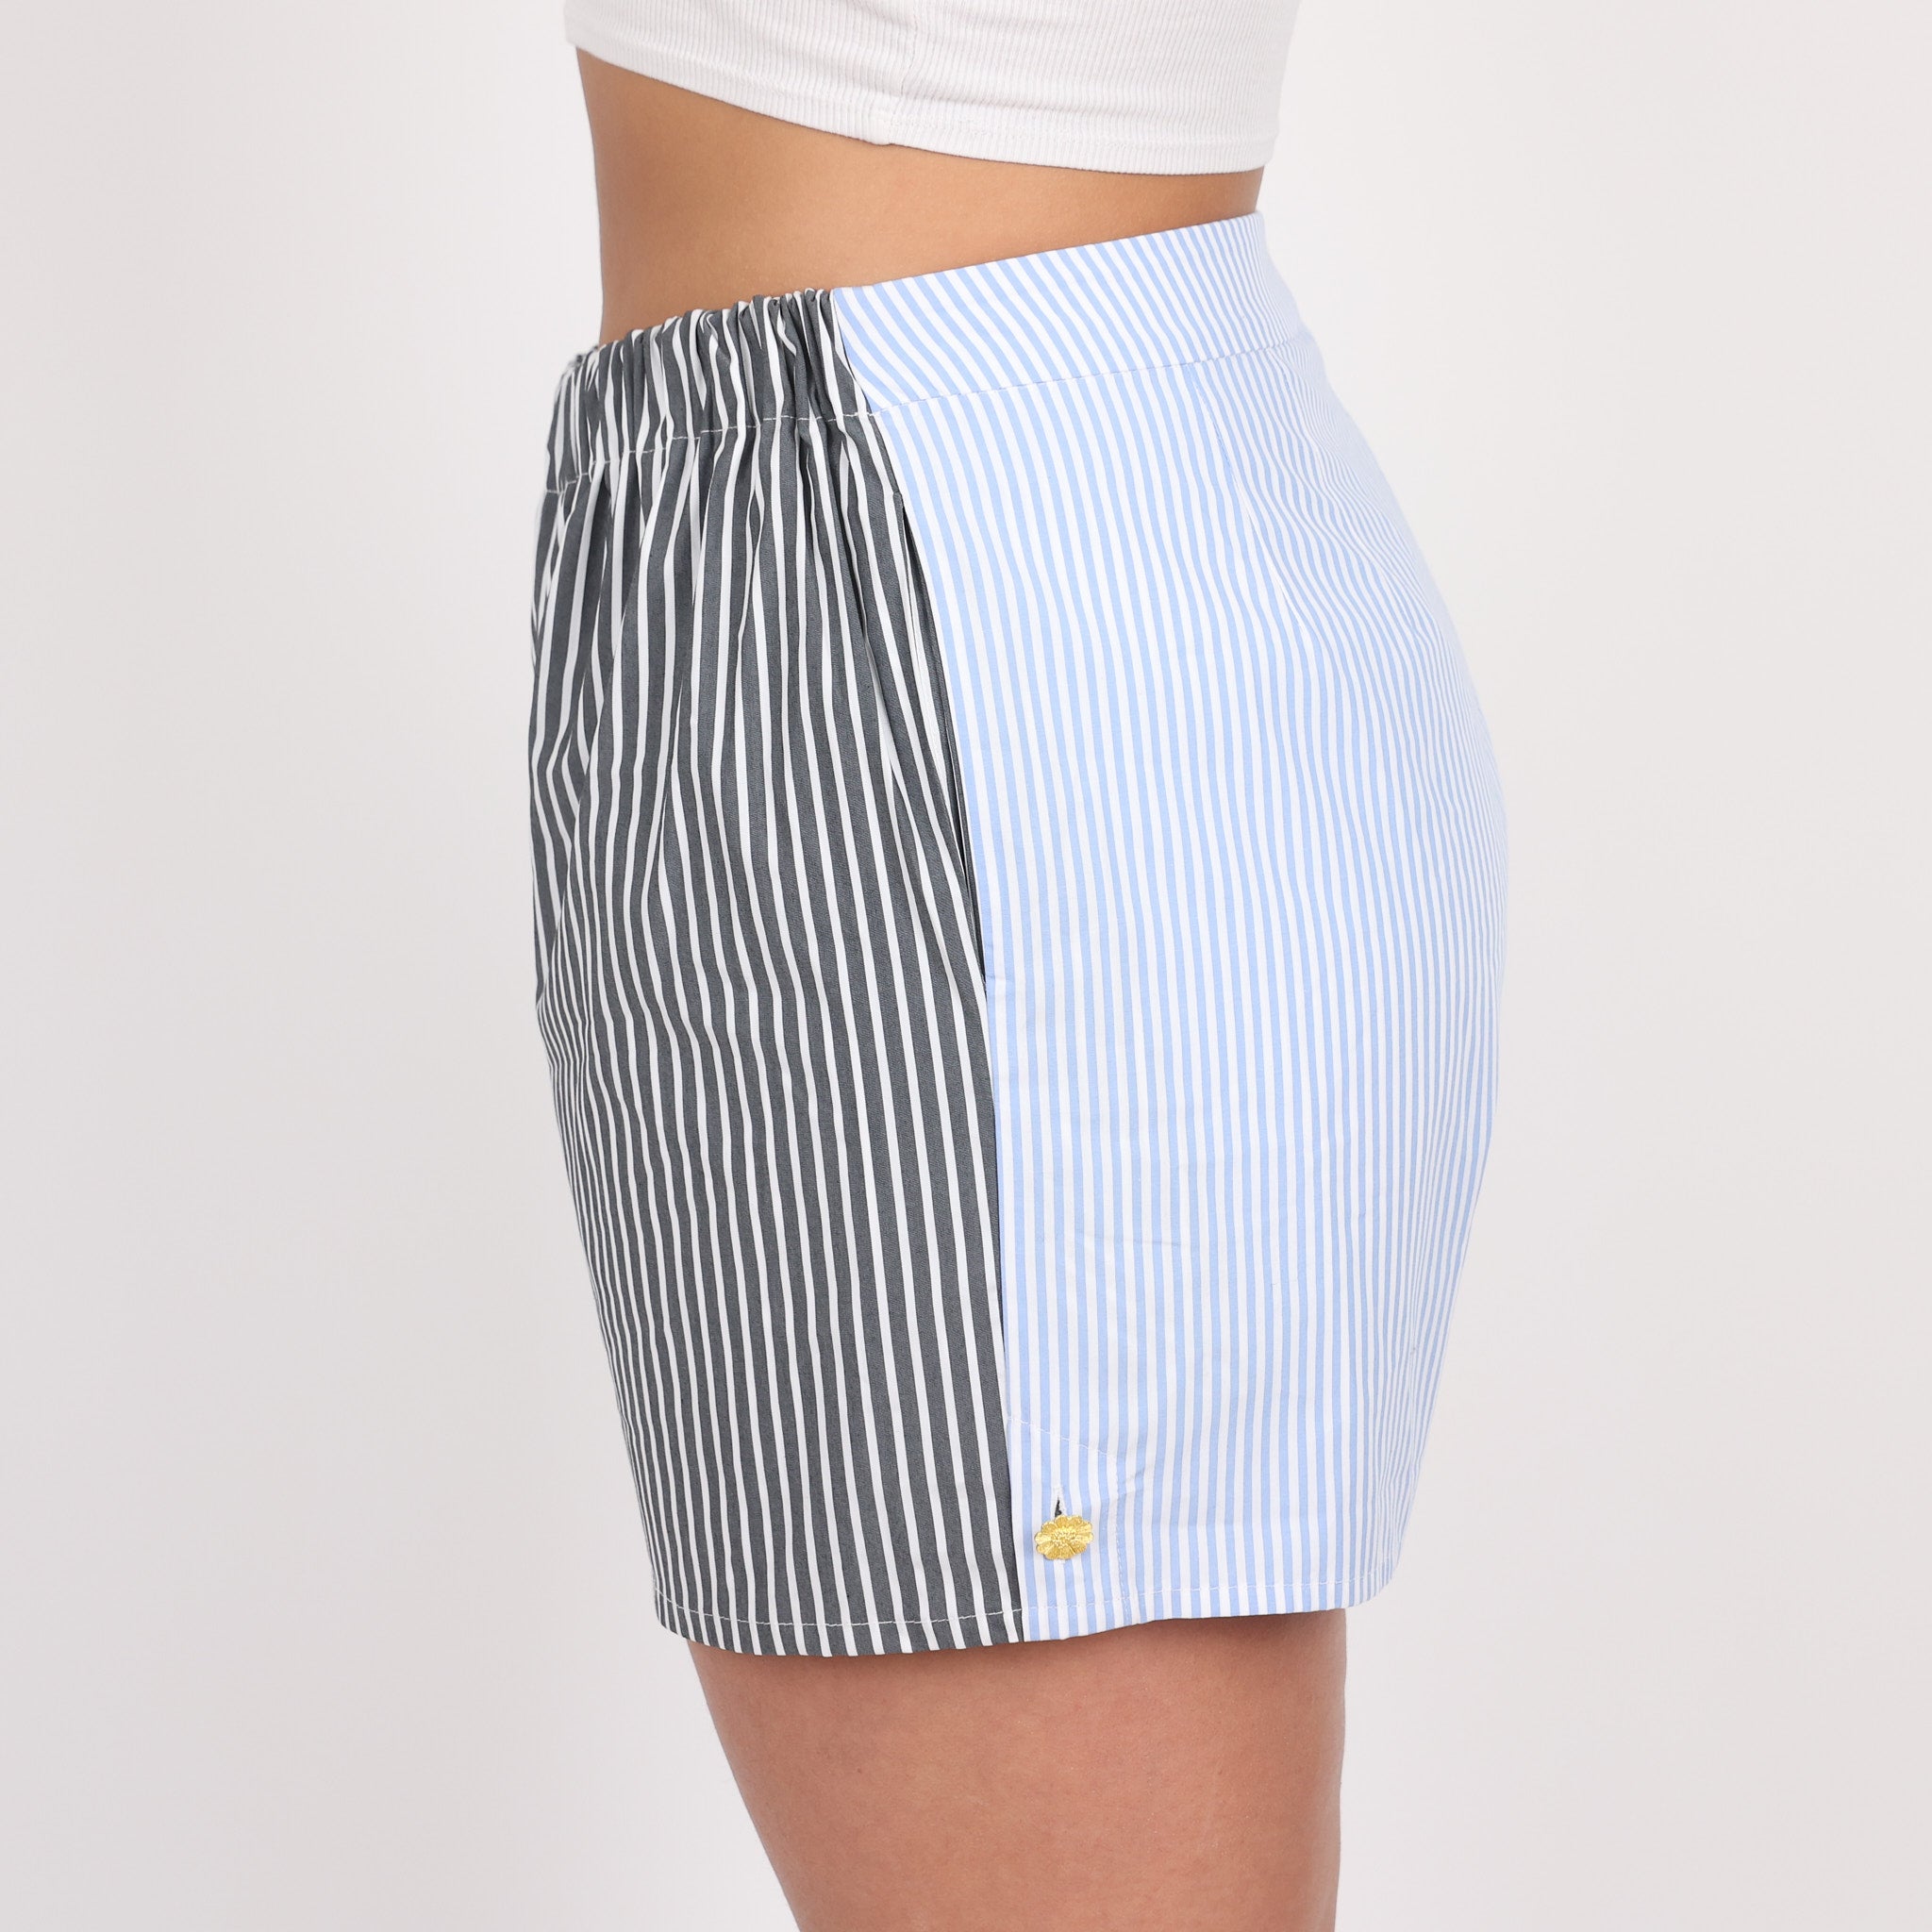 Shorts, UK Size 14